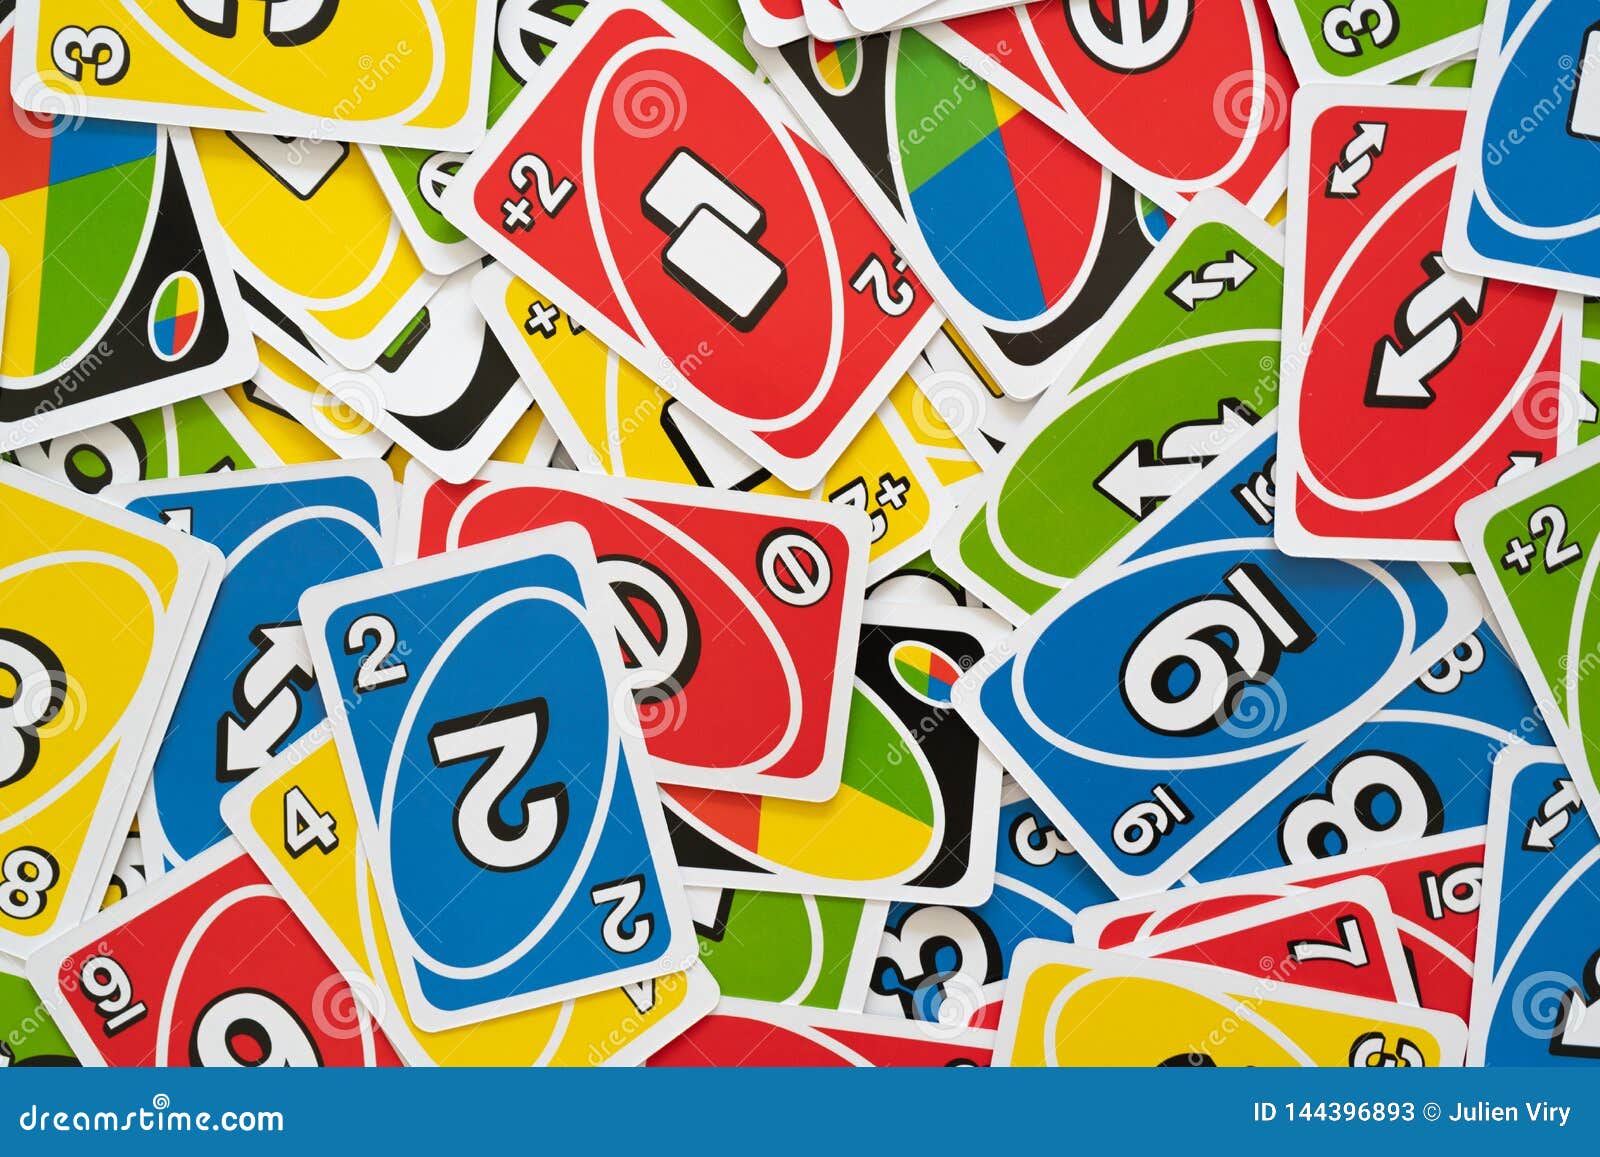 Thẻ Uno là thành phần không thể thiếu trong trò chơi Uno. Những lá bài đầy màu sắc sẽ khiến bạn tưởng như mình đang chơi một trò chơi thực sự. Hãy cùng khám phá những lá bài này và bắt đầu chơi Uno thôi nào!